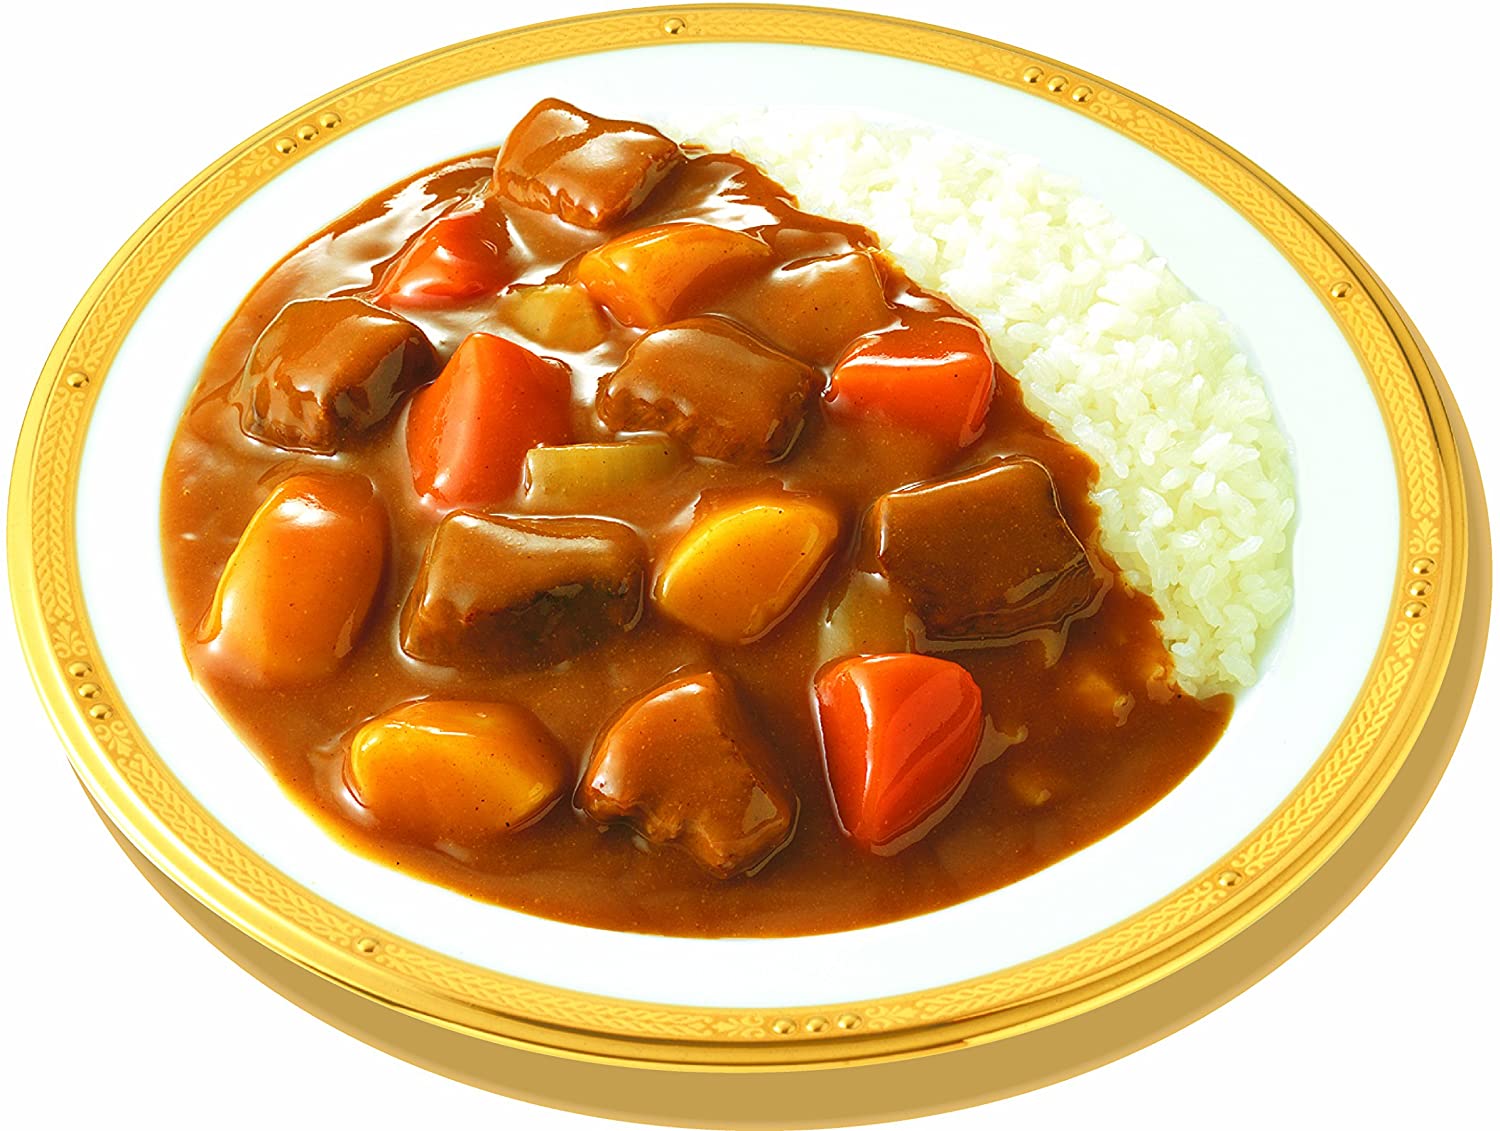 Viên nấu cà ri S&amp;B Foods Golden Curry vị cay vừa 198g Nhật Bản - Số 3